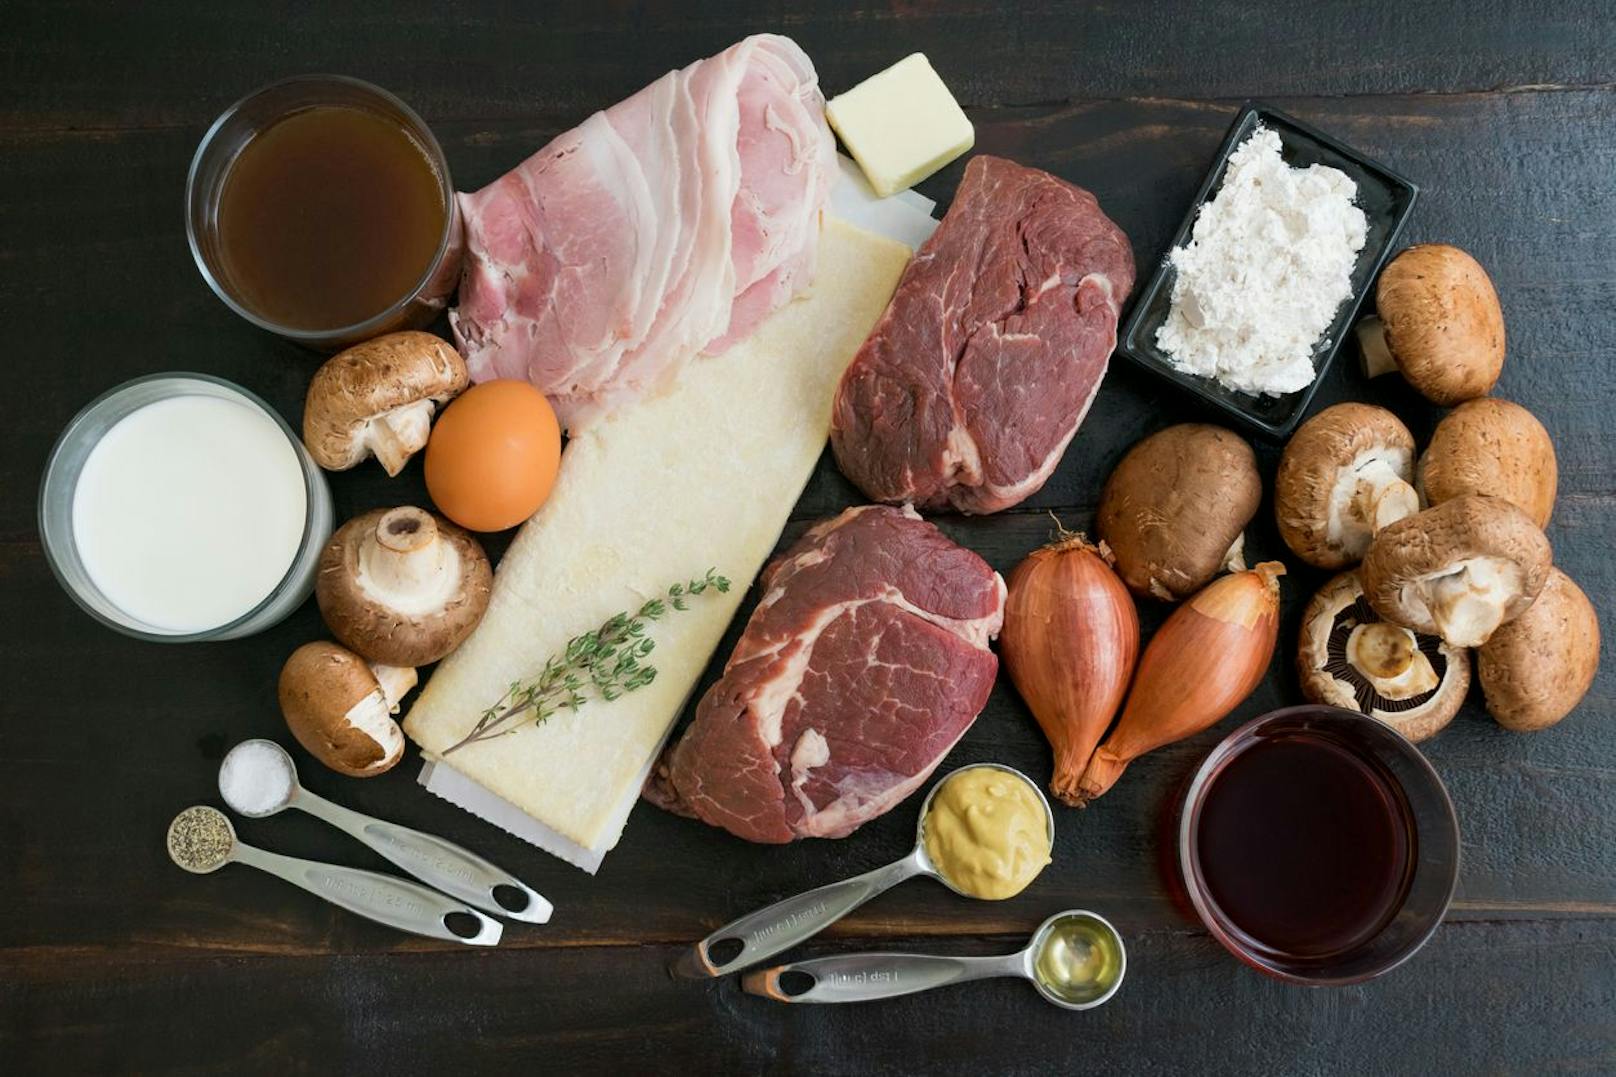 Gesättigte Fette findest du hauptsächlich in tierischen Lebensmitteln, wie Rindfleisch oder typischen Milchprodukten. Sie können sich negativ auf deinen Körper auswirken, wenn du es mit der Nahrungszufuhr übertreibst.